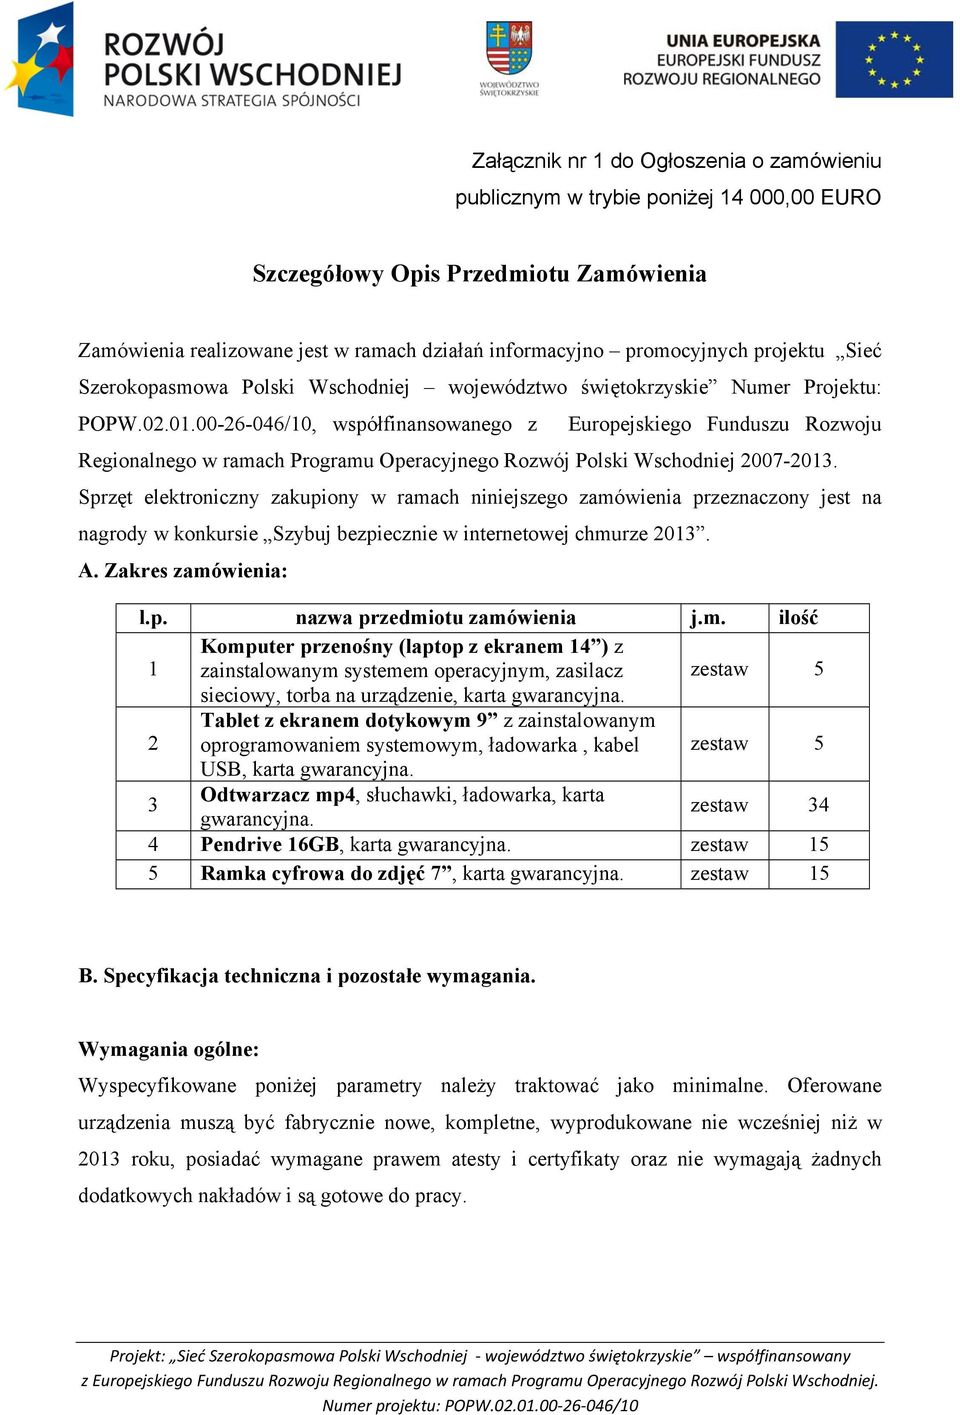 00-26-046/10, współfinansowanego z Europejskiego Funduszu Rozwoju Regionalnego w ramach Programu Operacyjnego Rozwój Polski Wschodniej 2007-2013.